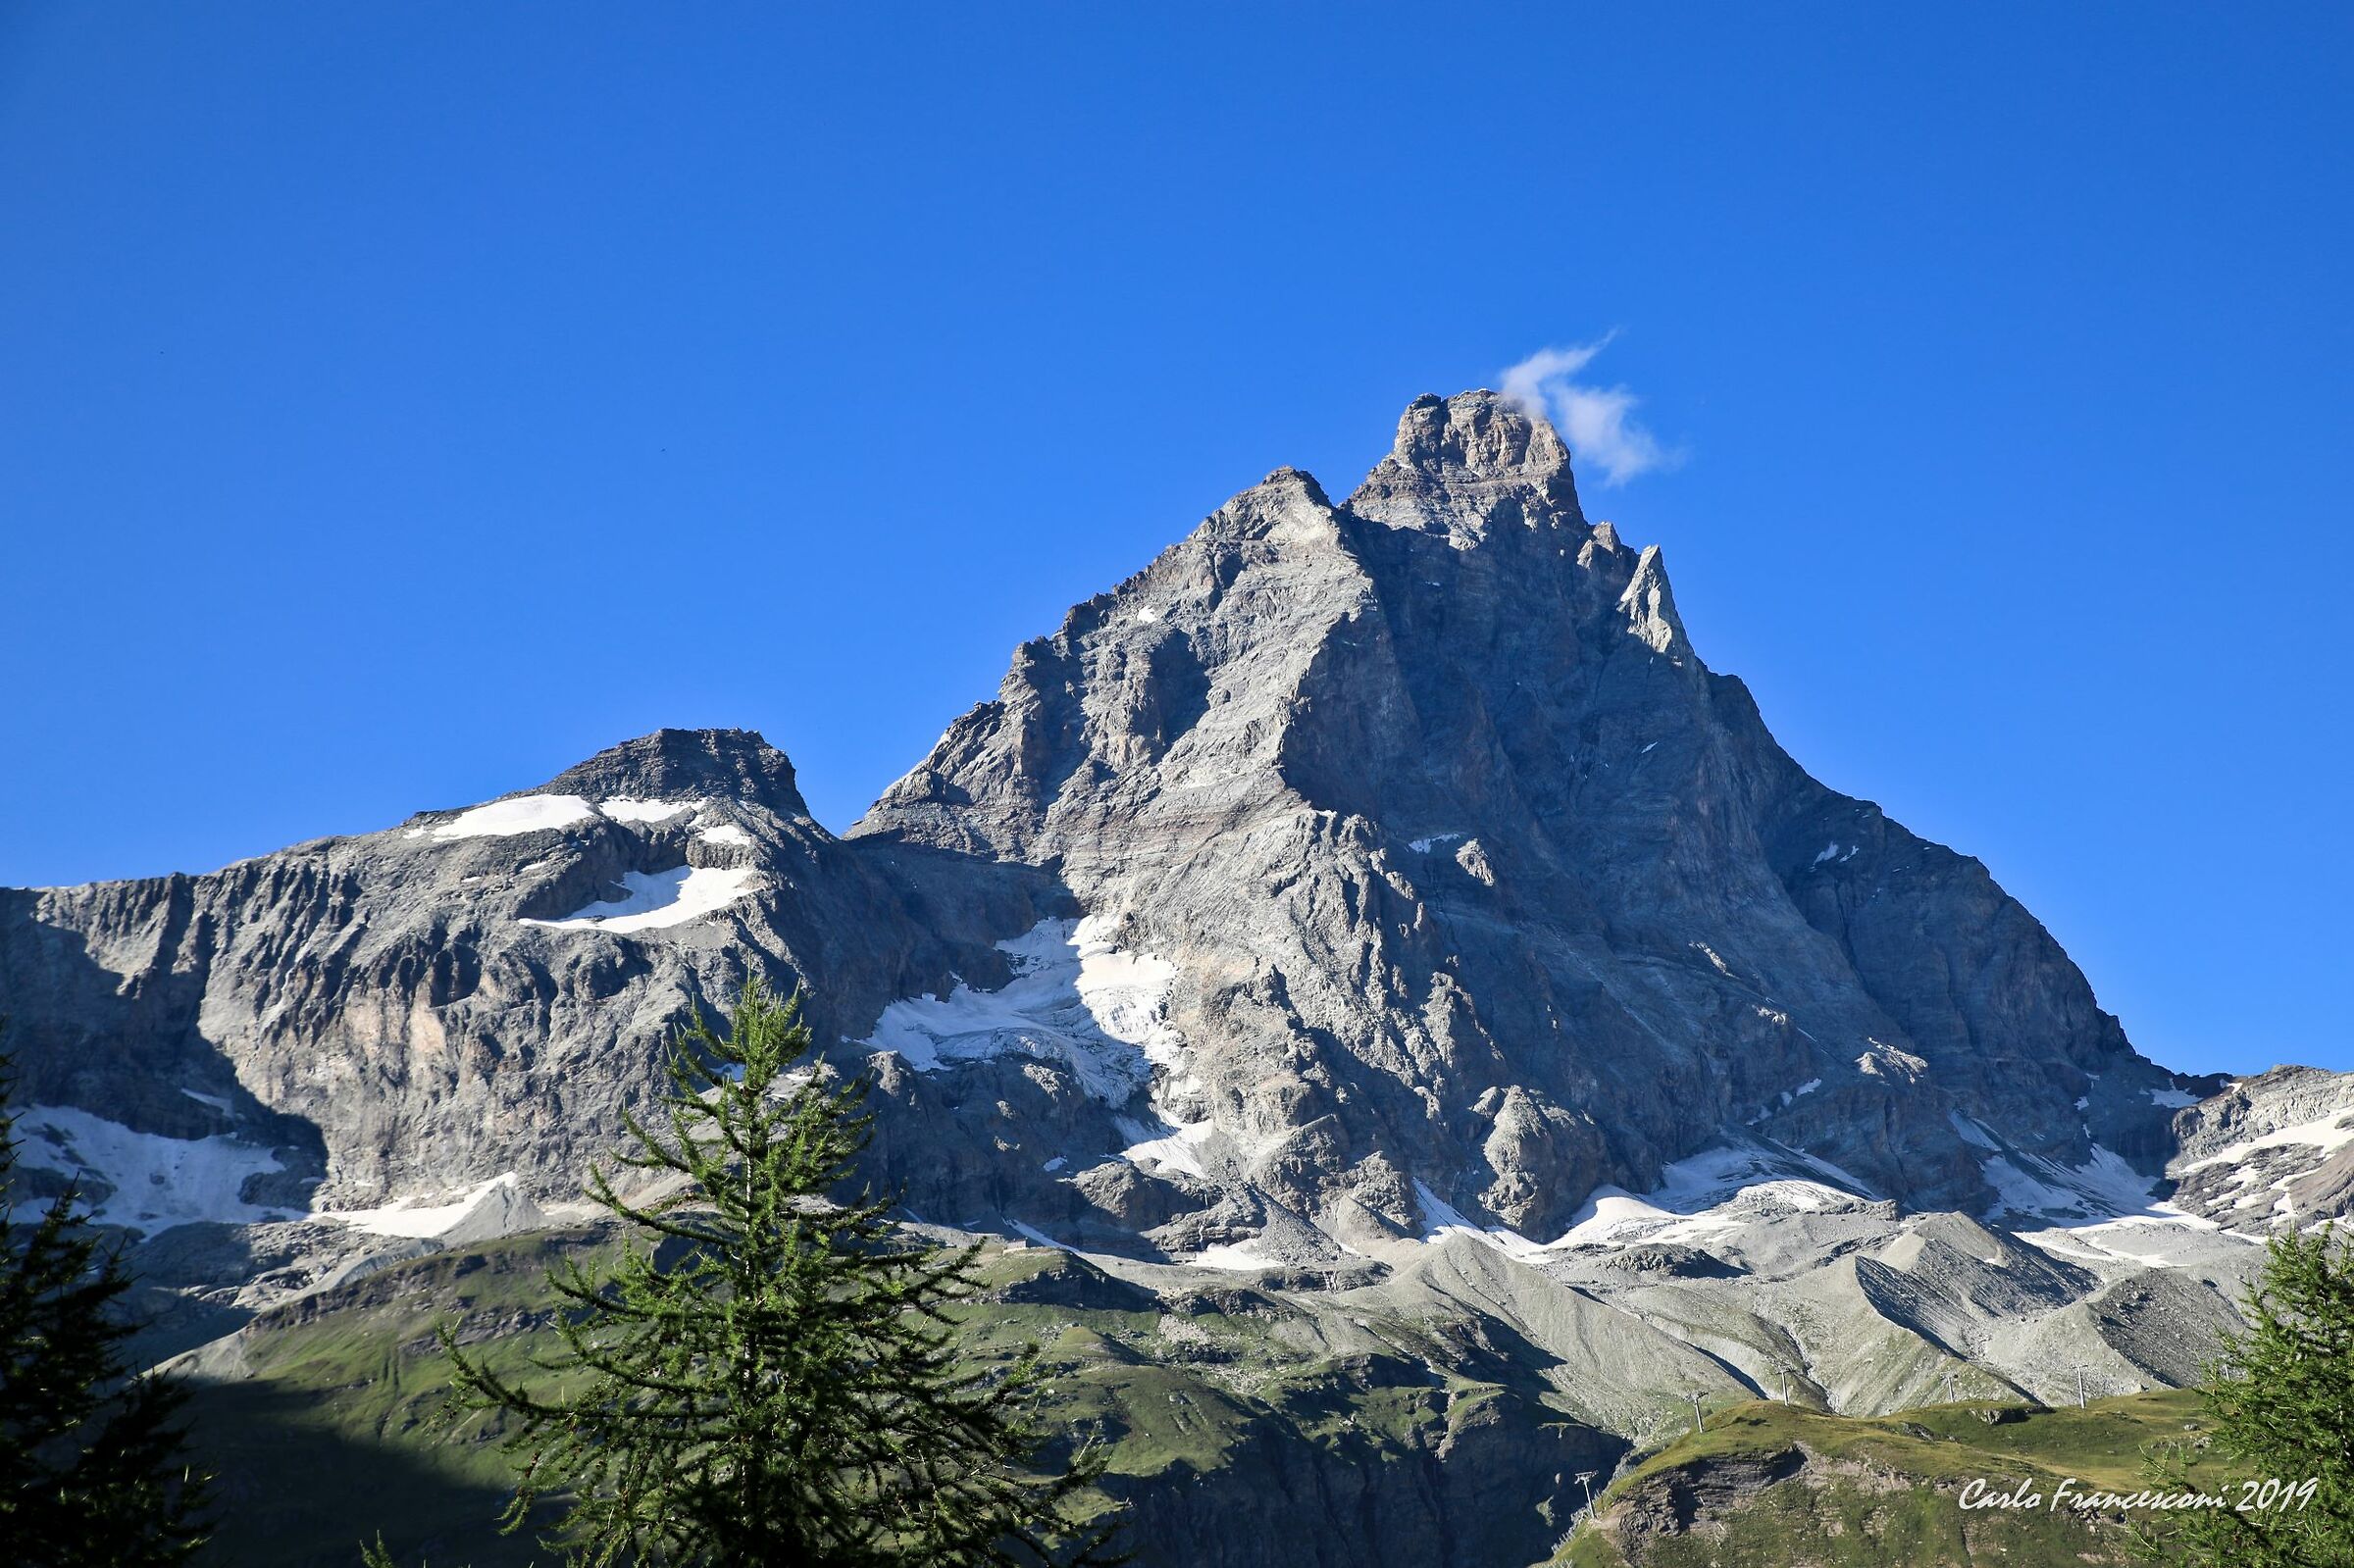 The Matterhorn - no snow...